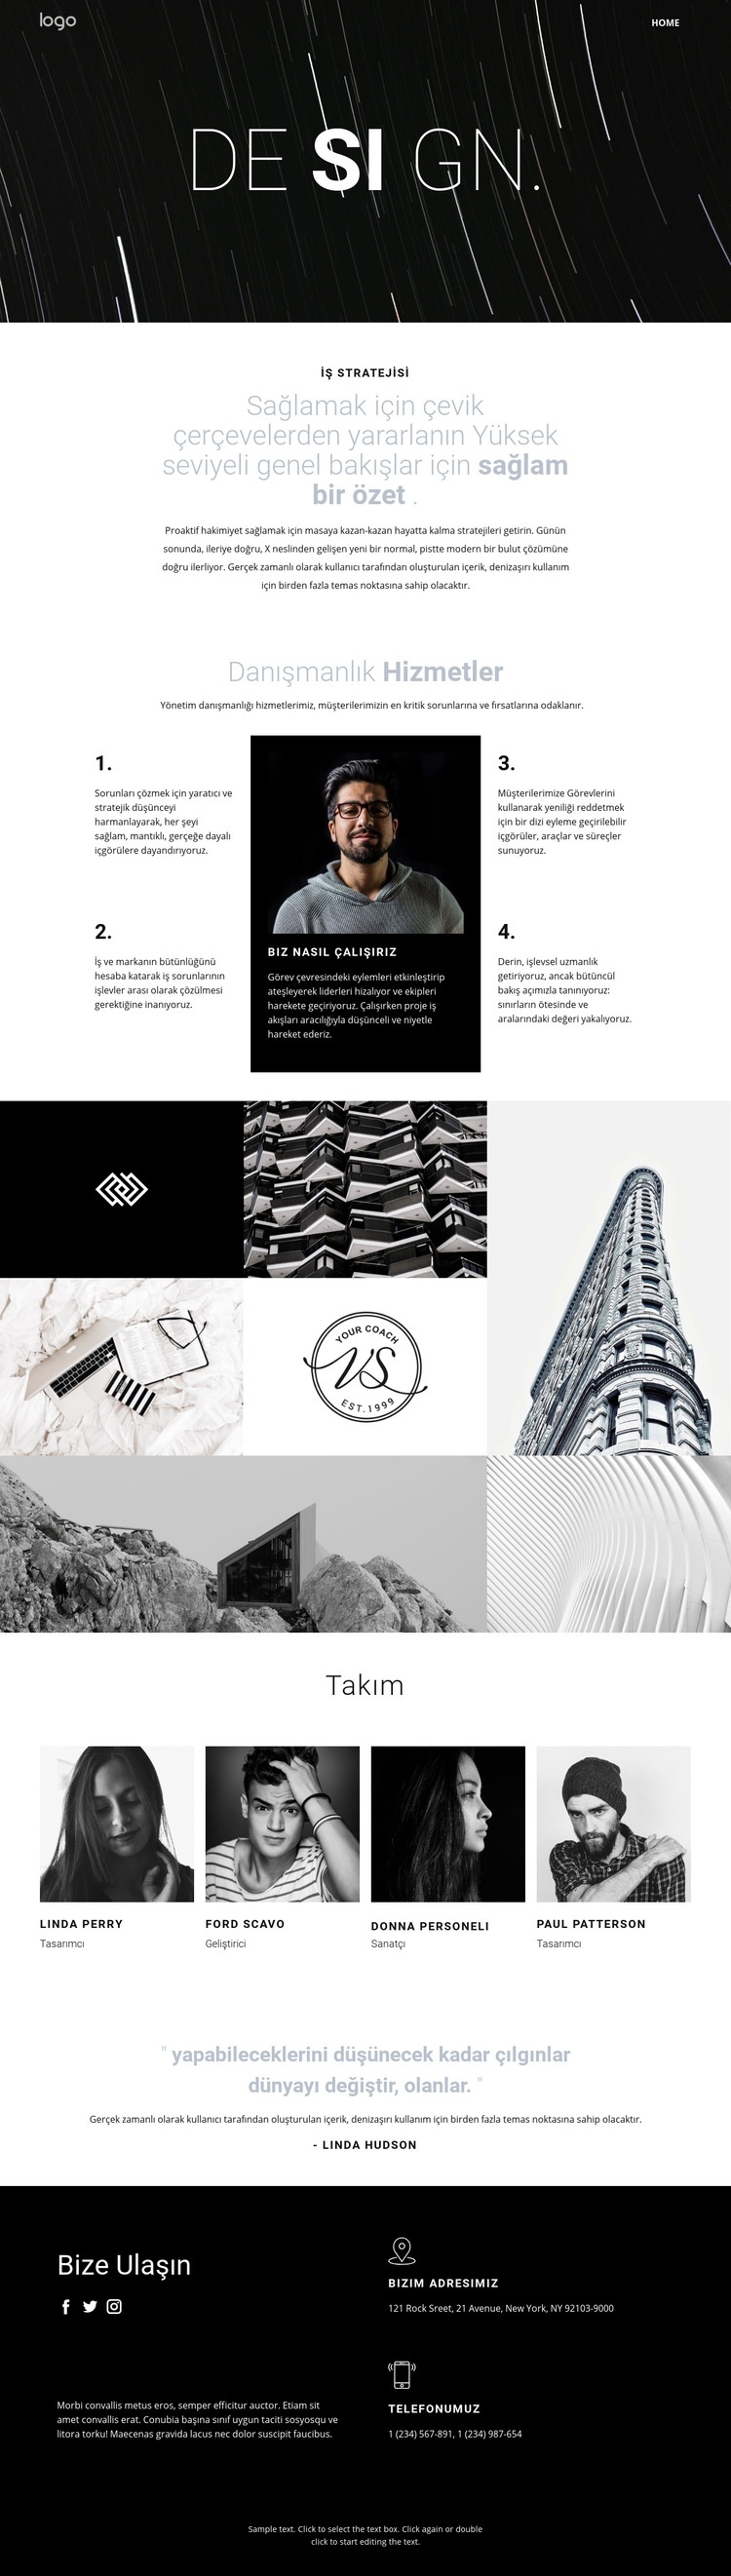 Tasarım ve yaratıcı sanat Web Sitesi Mockup'ı